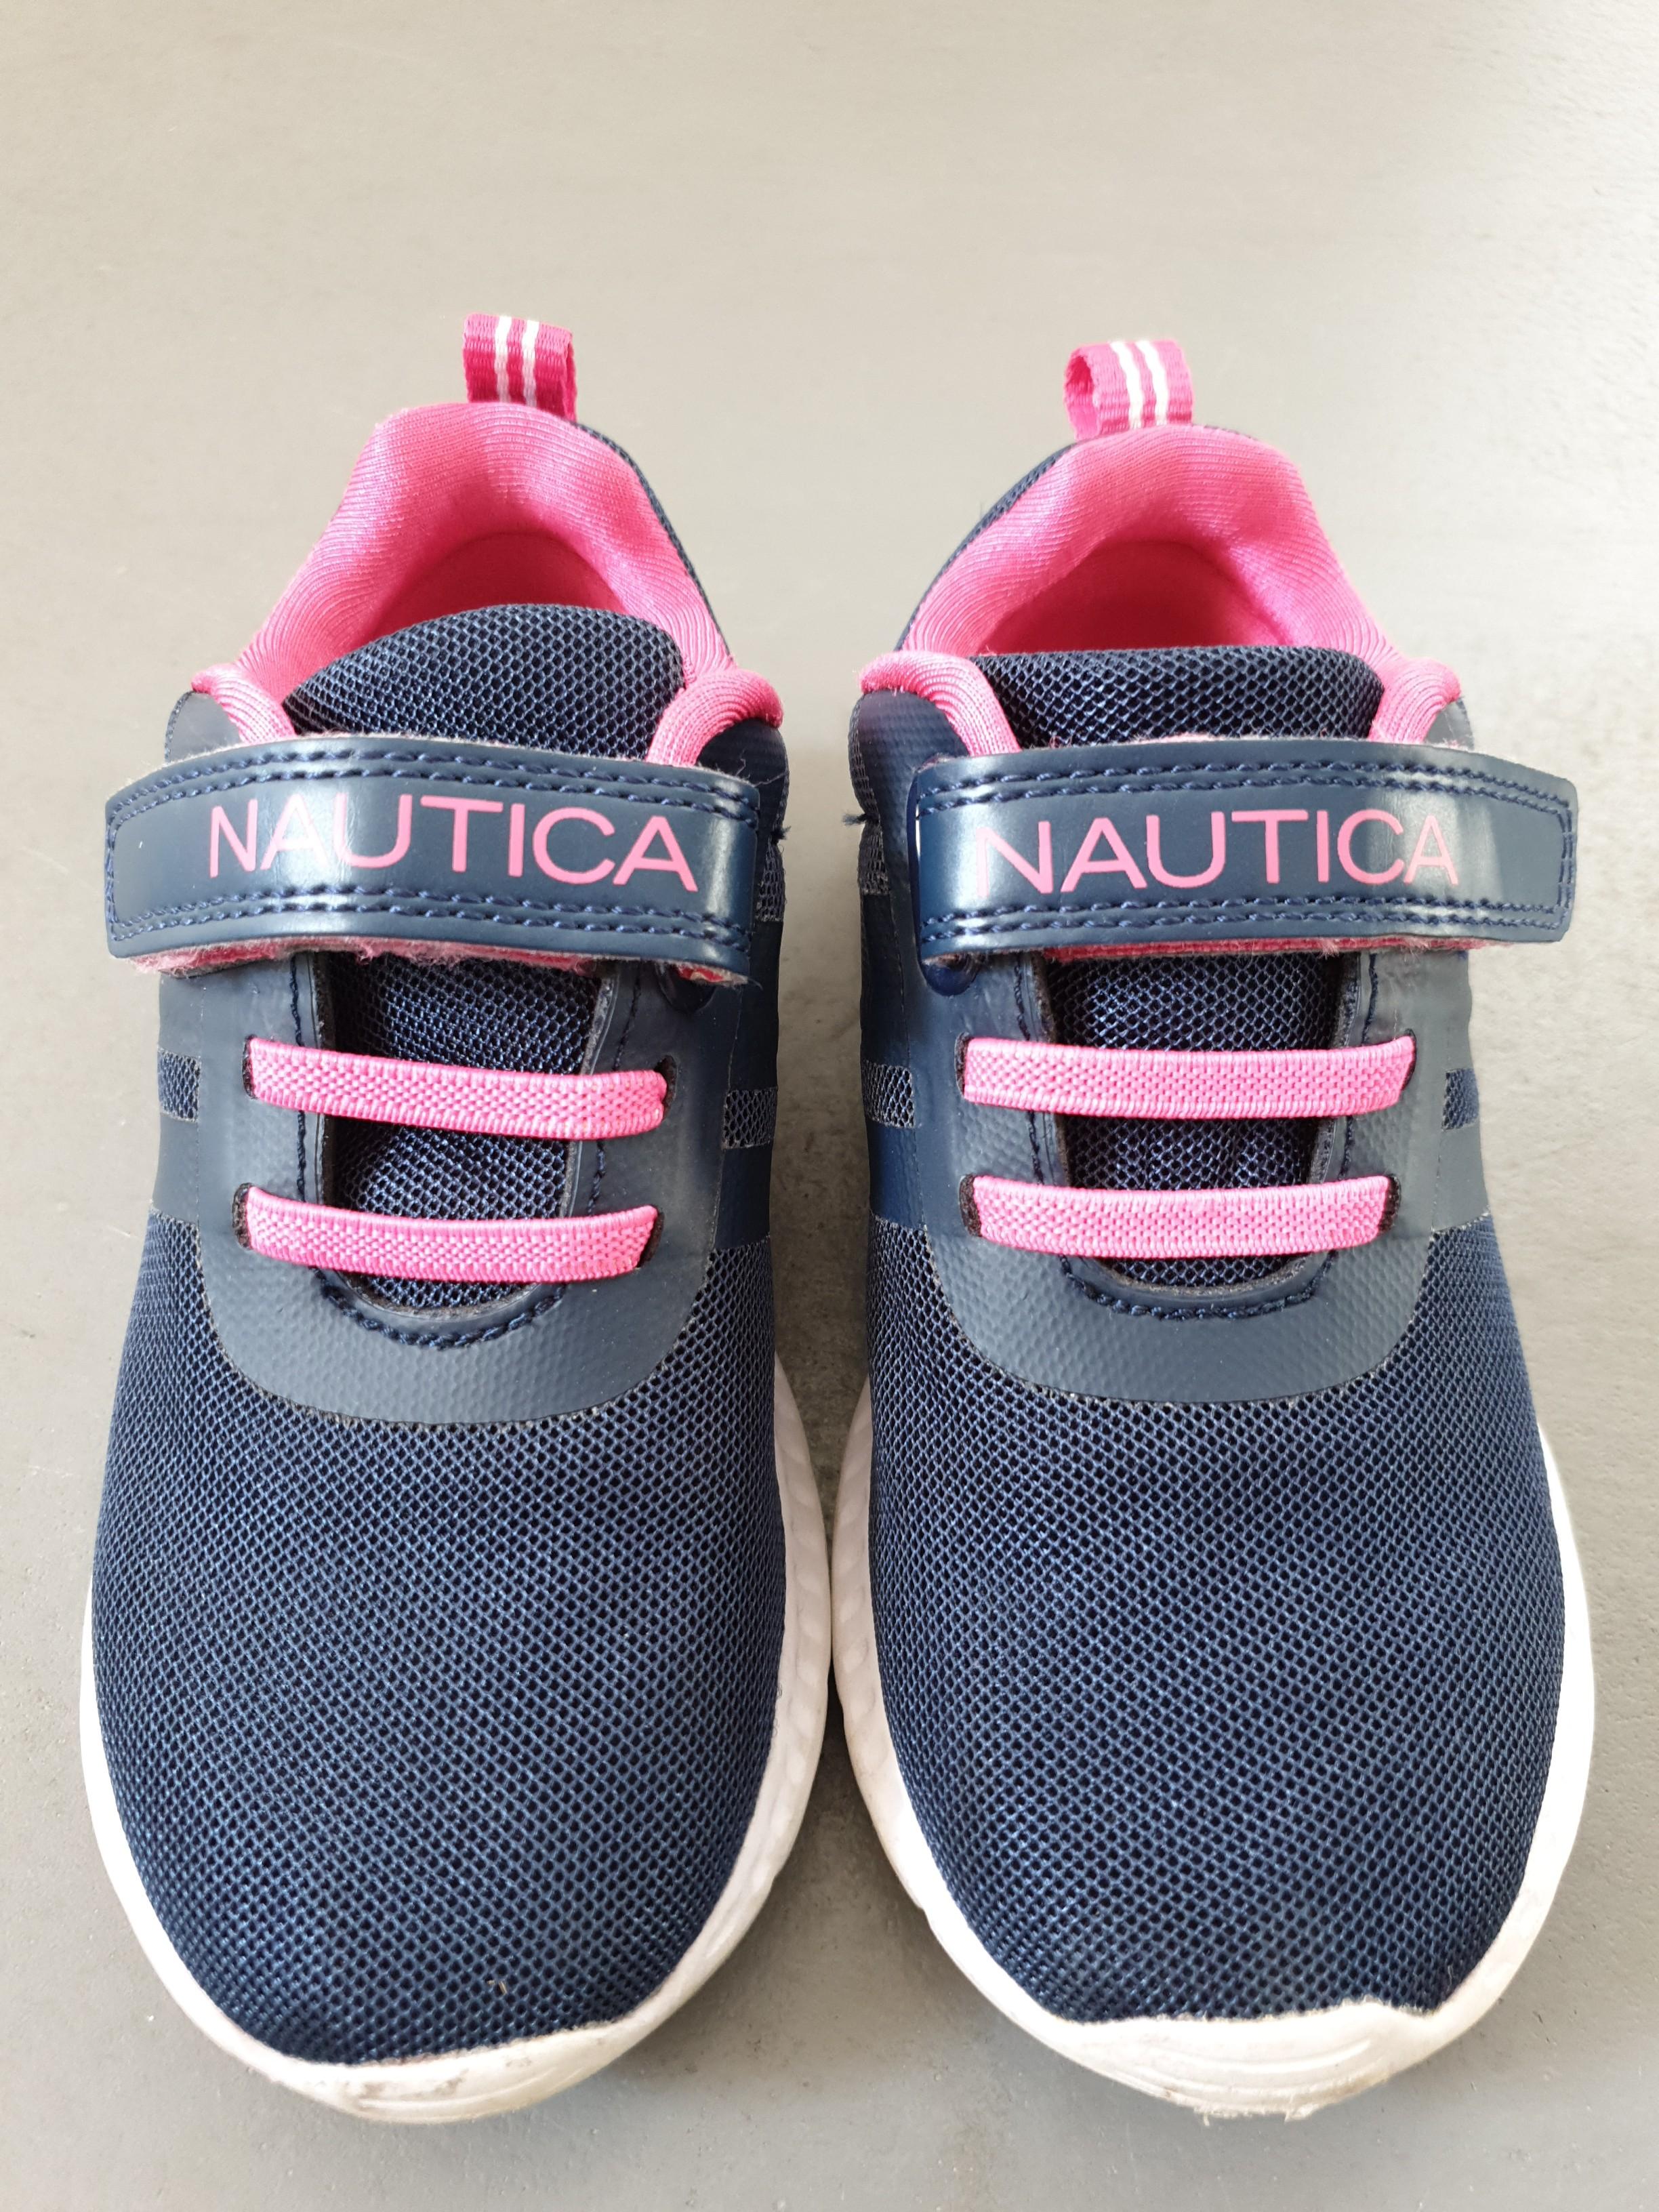 nautica kids shoes